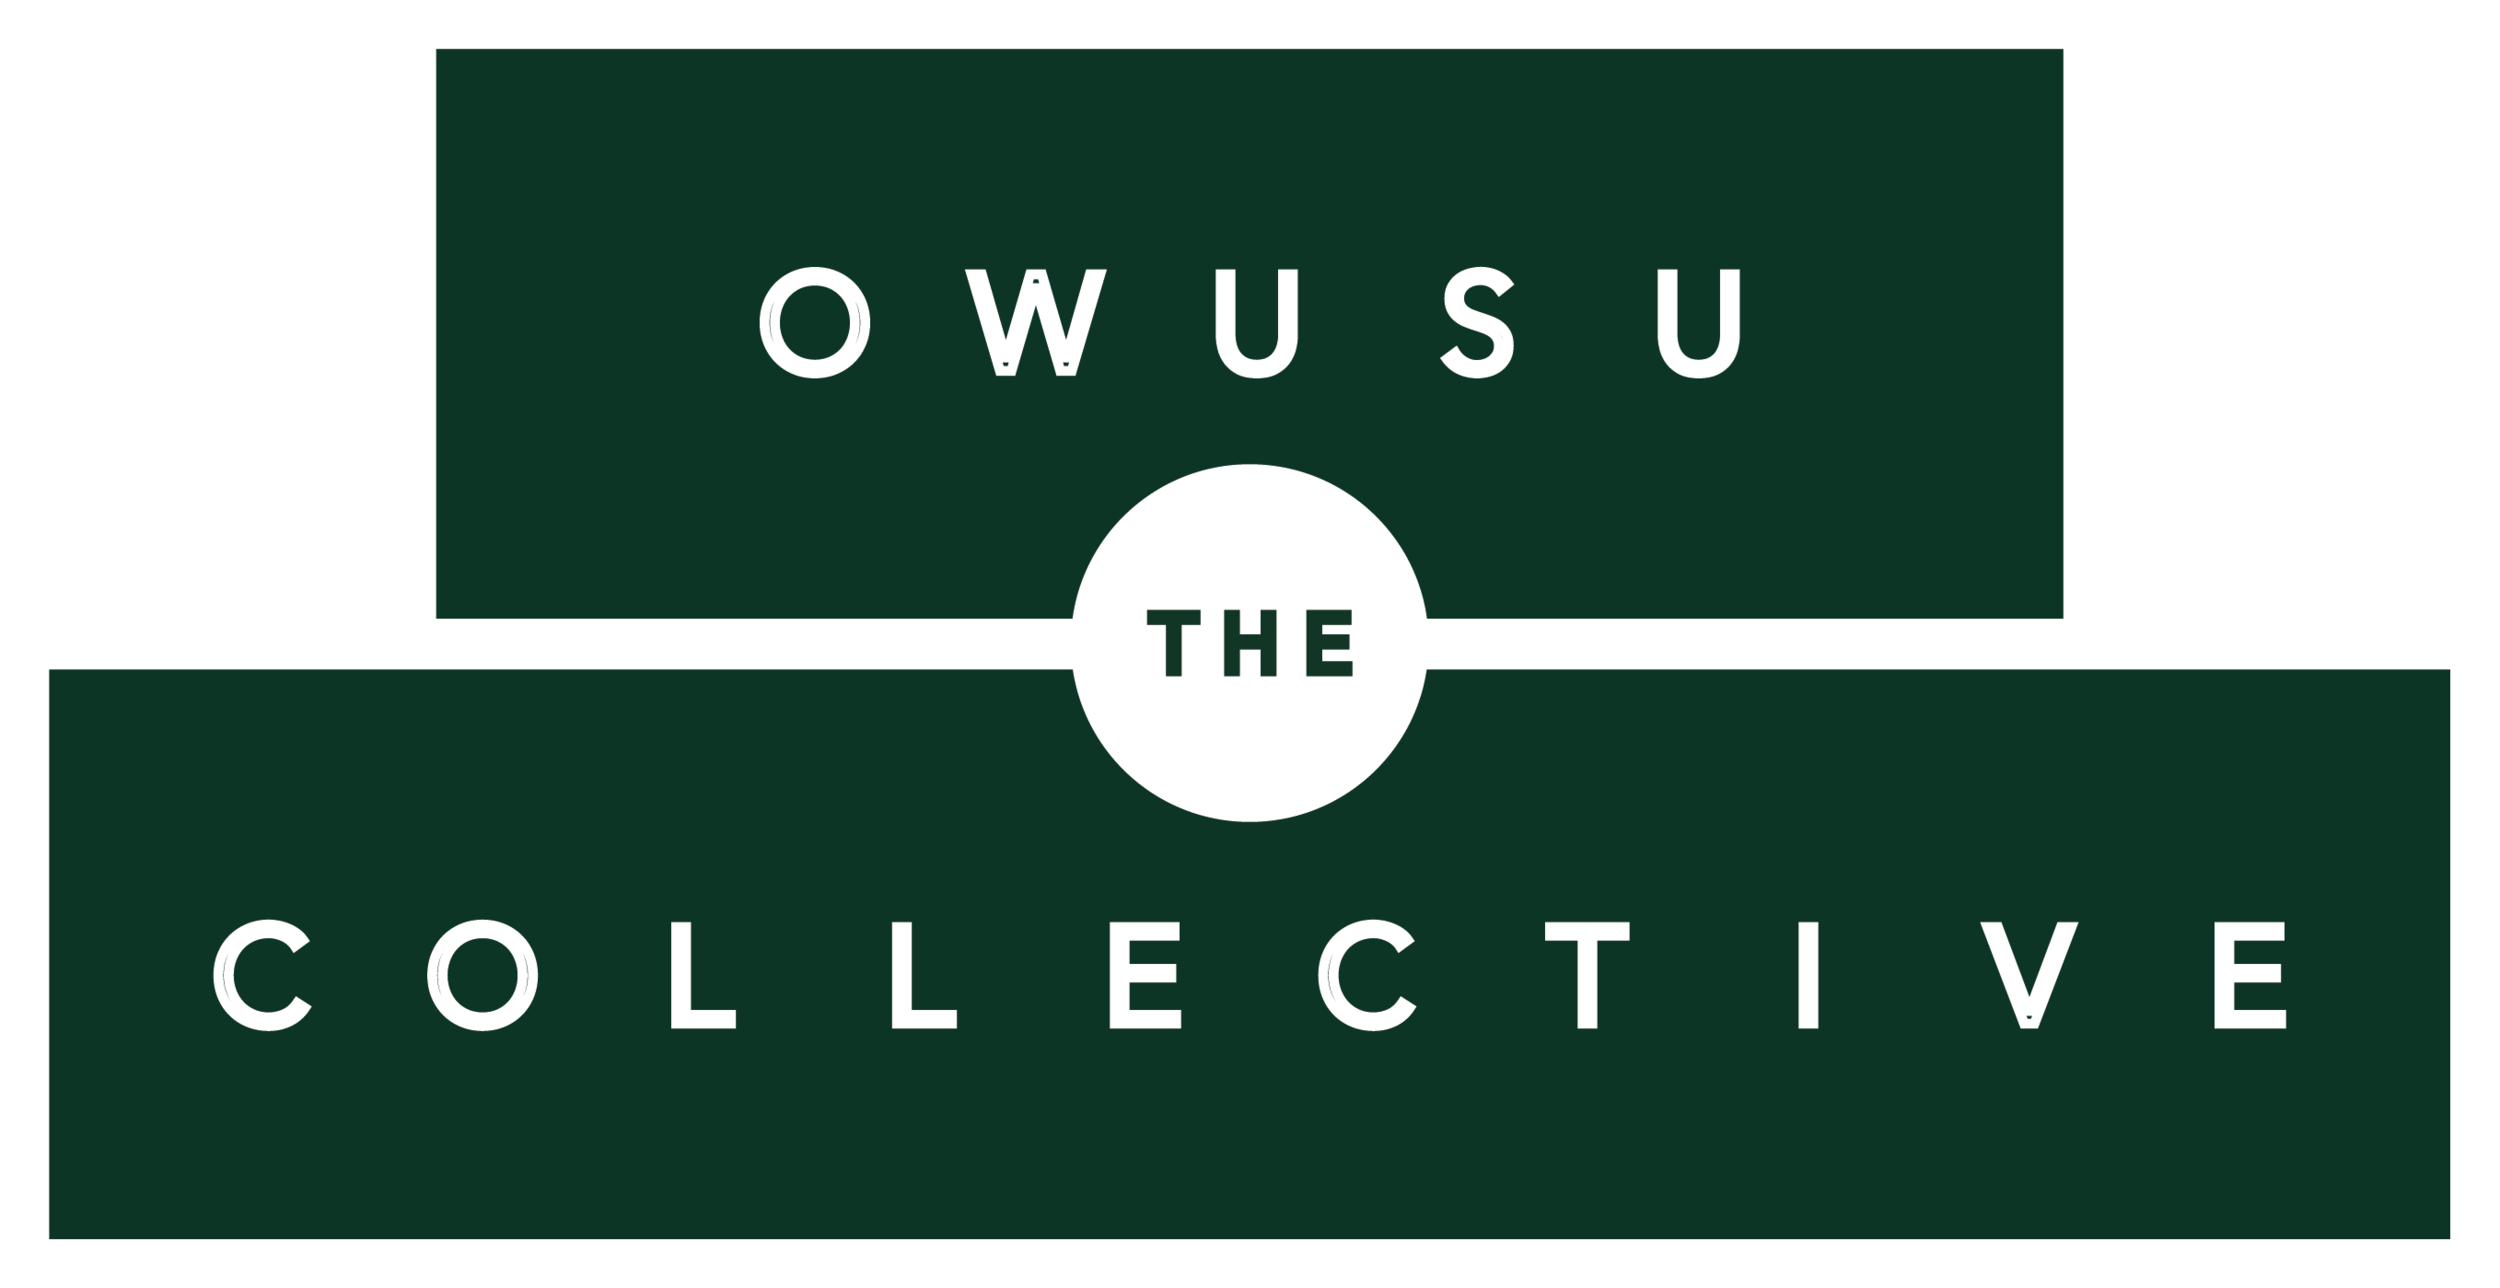 The owusu collective